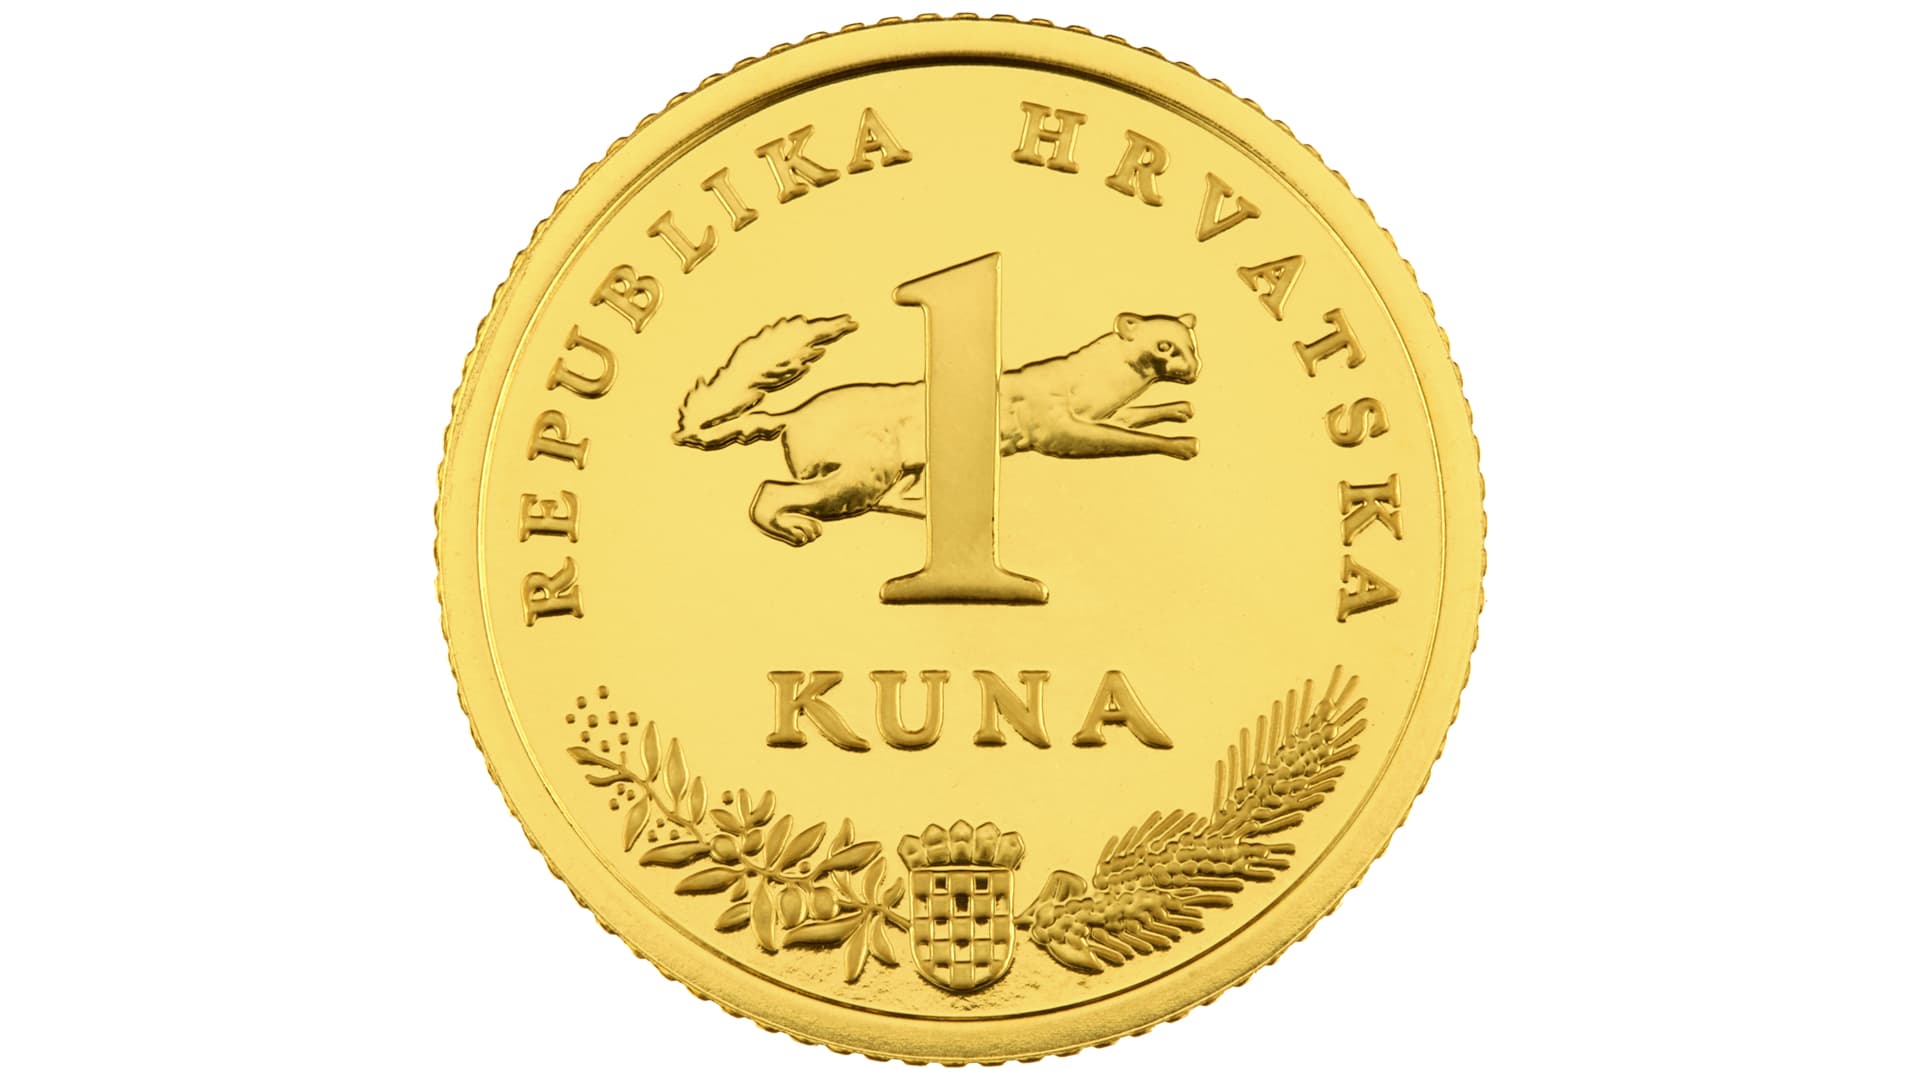 Gold Kuna commemorative coin